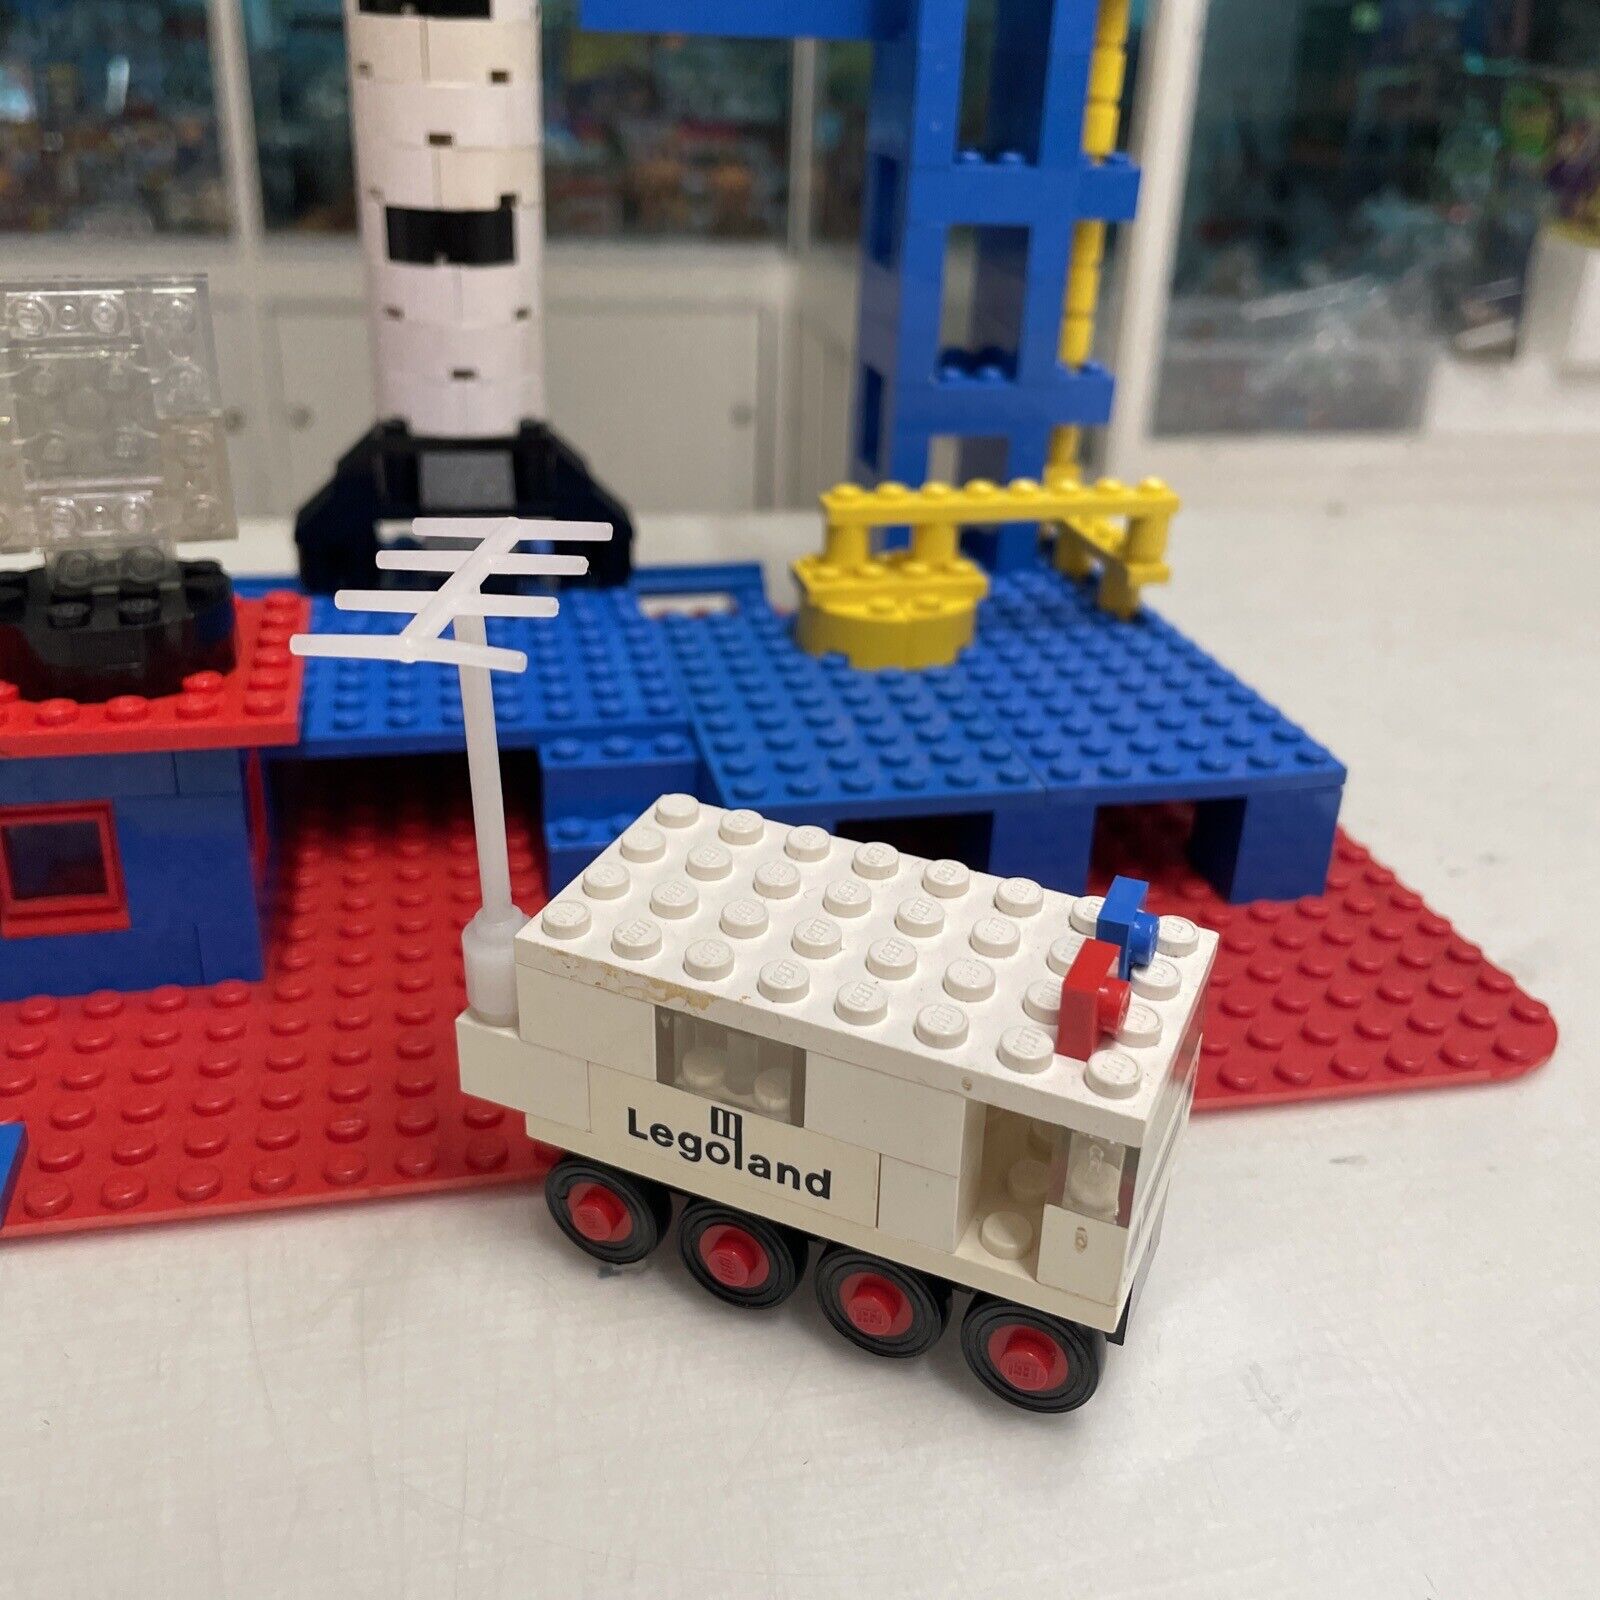 Lego-LEGOLAND-Set-358-Rocket-Base-vintage-70-80-145504901889-3